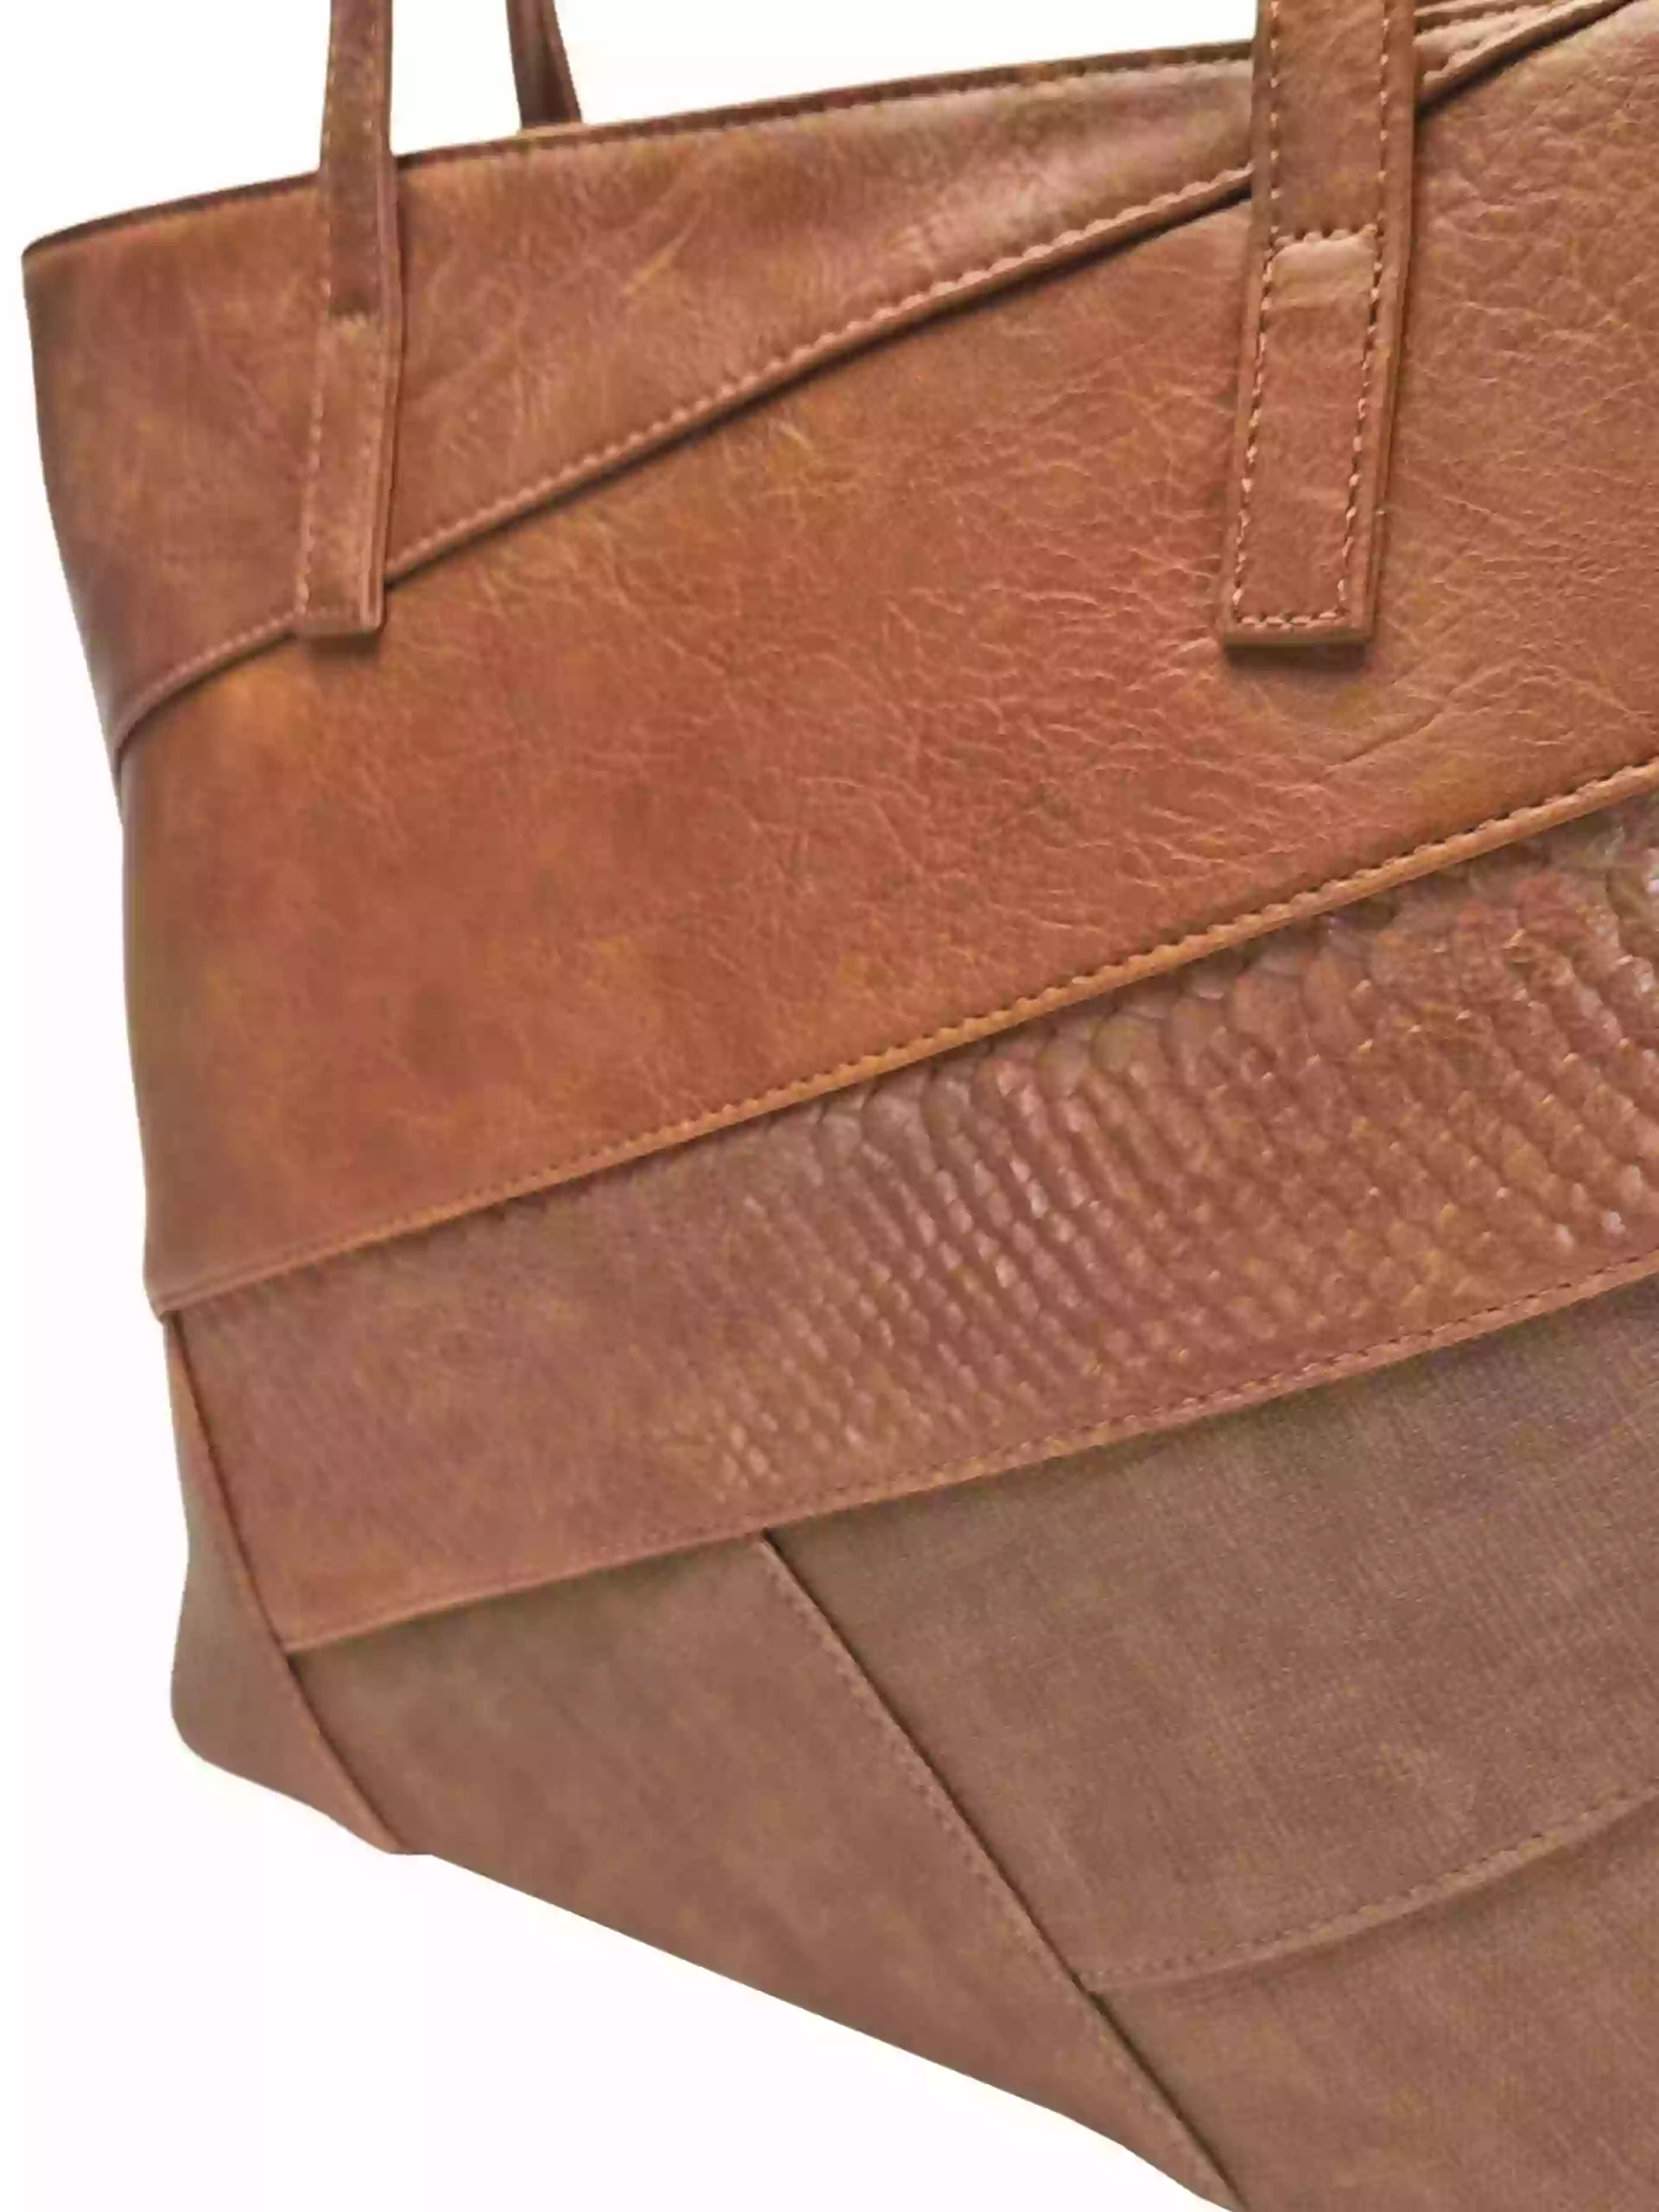 Středně hnědá kabelka přes rameno s šikmými vzory, Tapple, H190030, detail kabelky